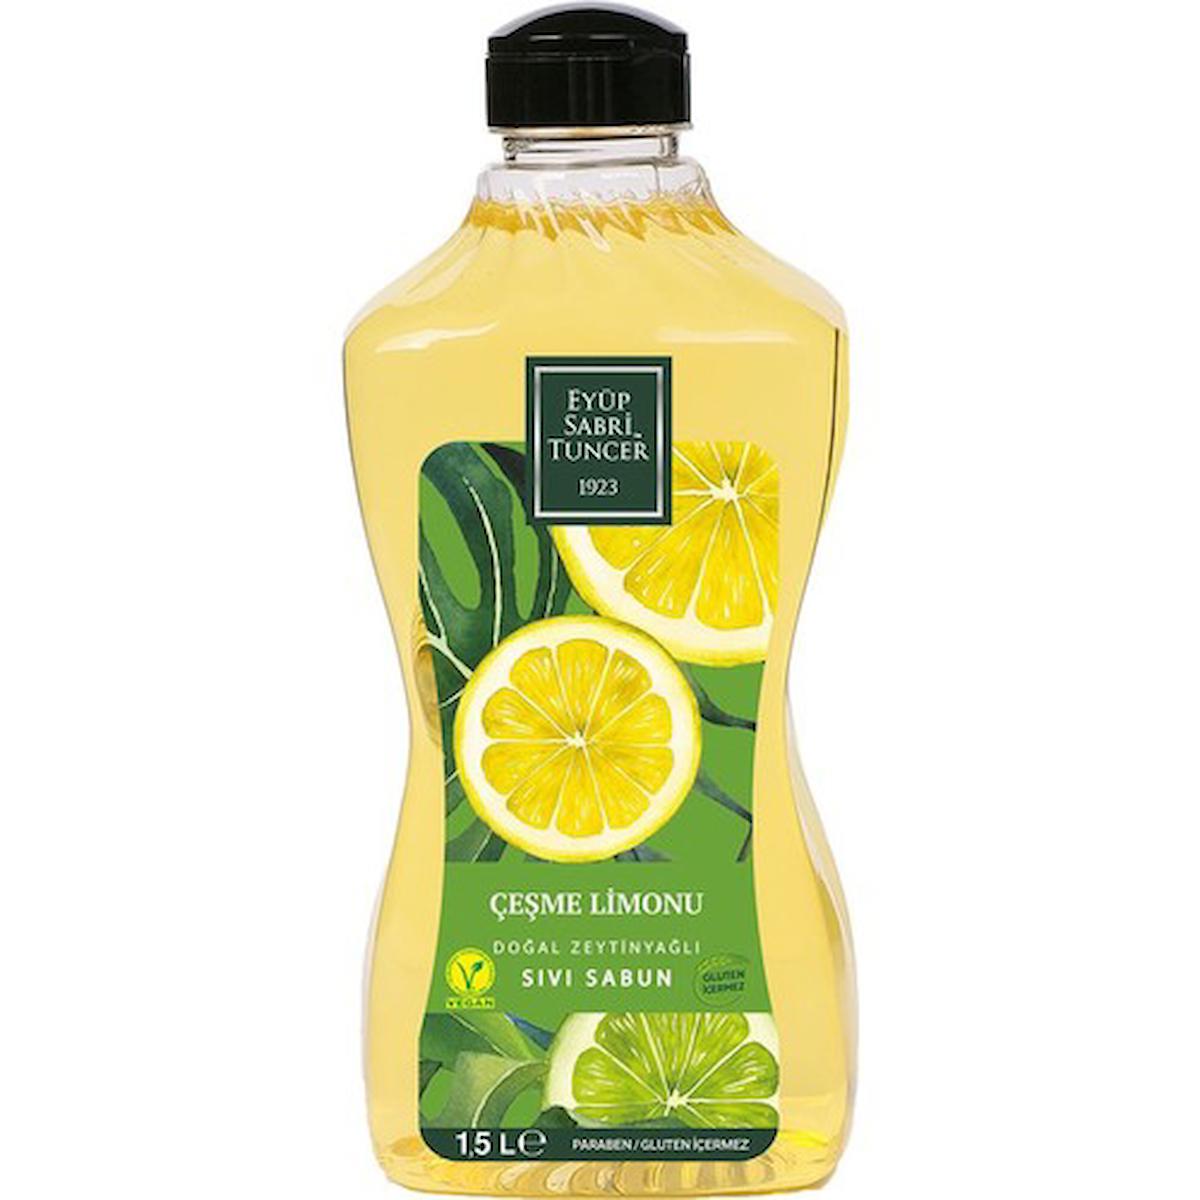 Eyüp Sabri Tuncer Çeşme Limonu Nemlendiricili Sıvı Sabun 1.5 lt Tekli